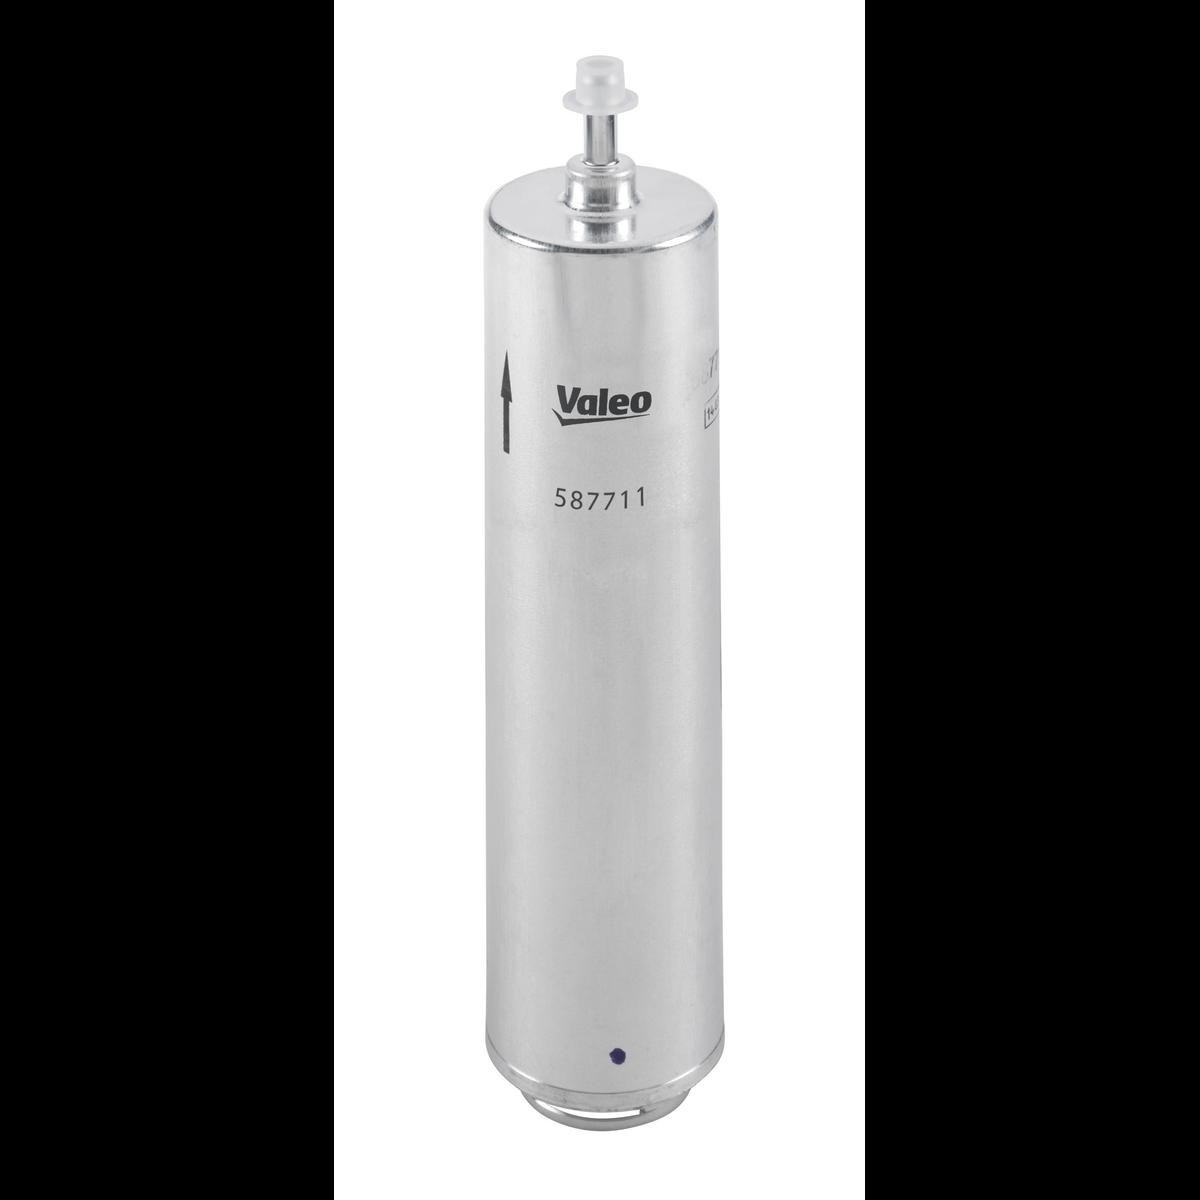 VALEO 587711 Fuel filter Spin-on Filter, 8mm